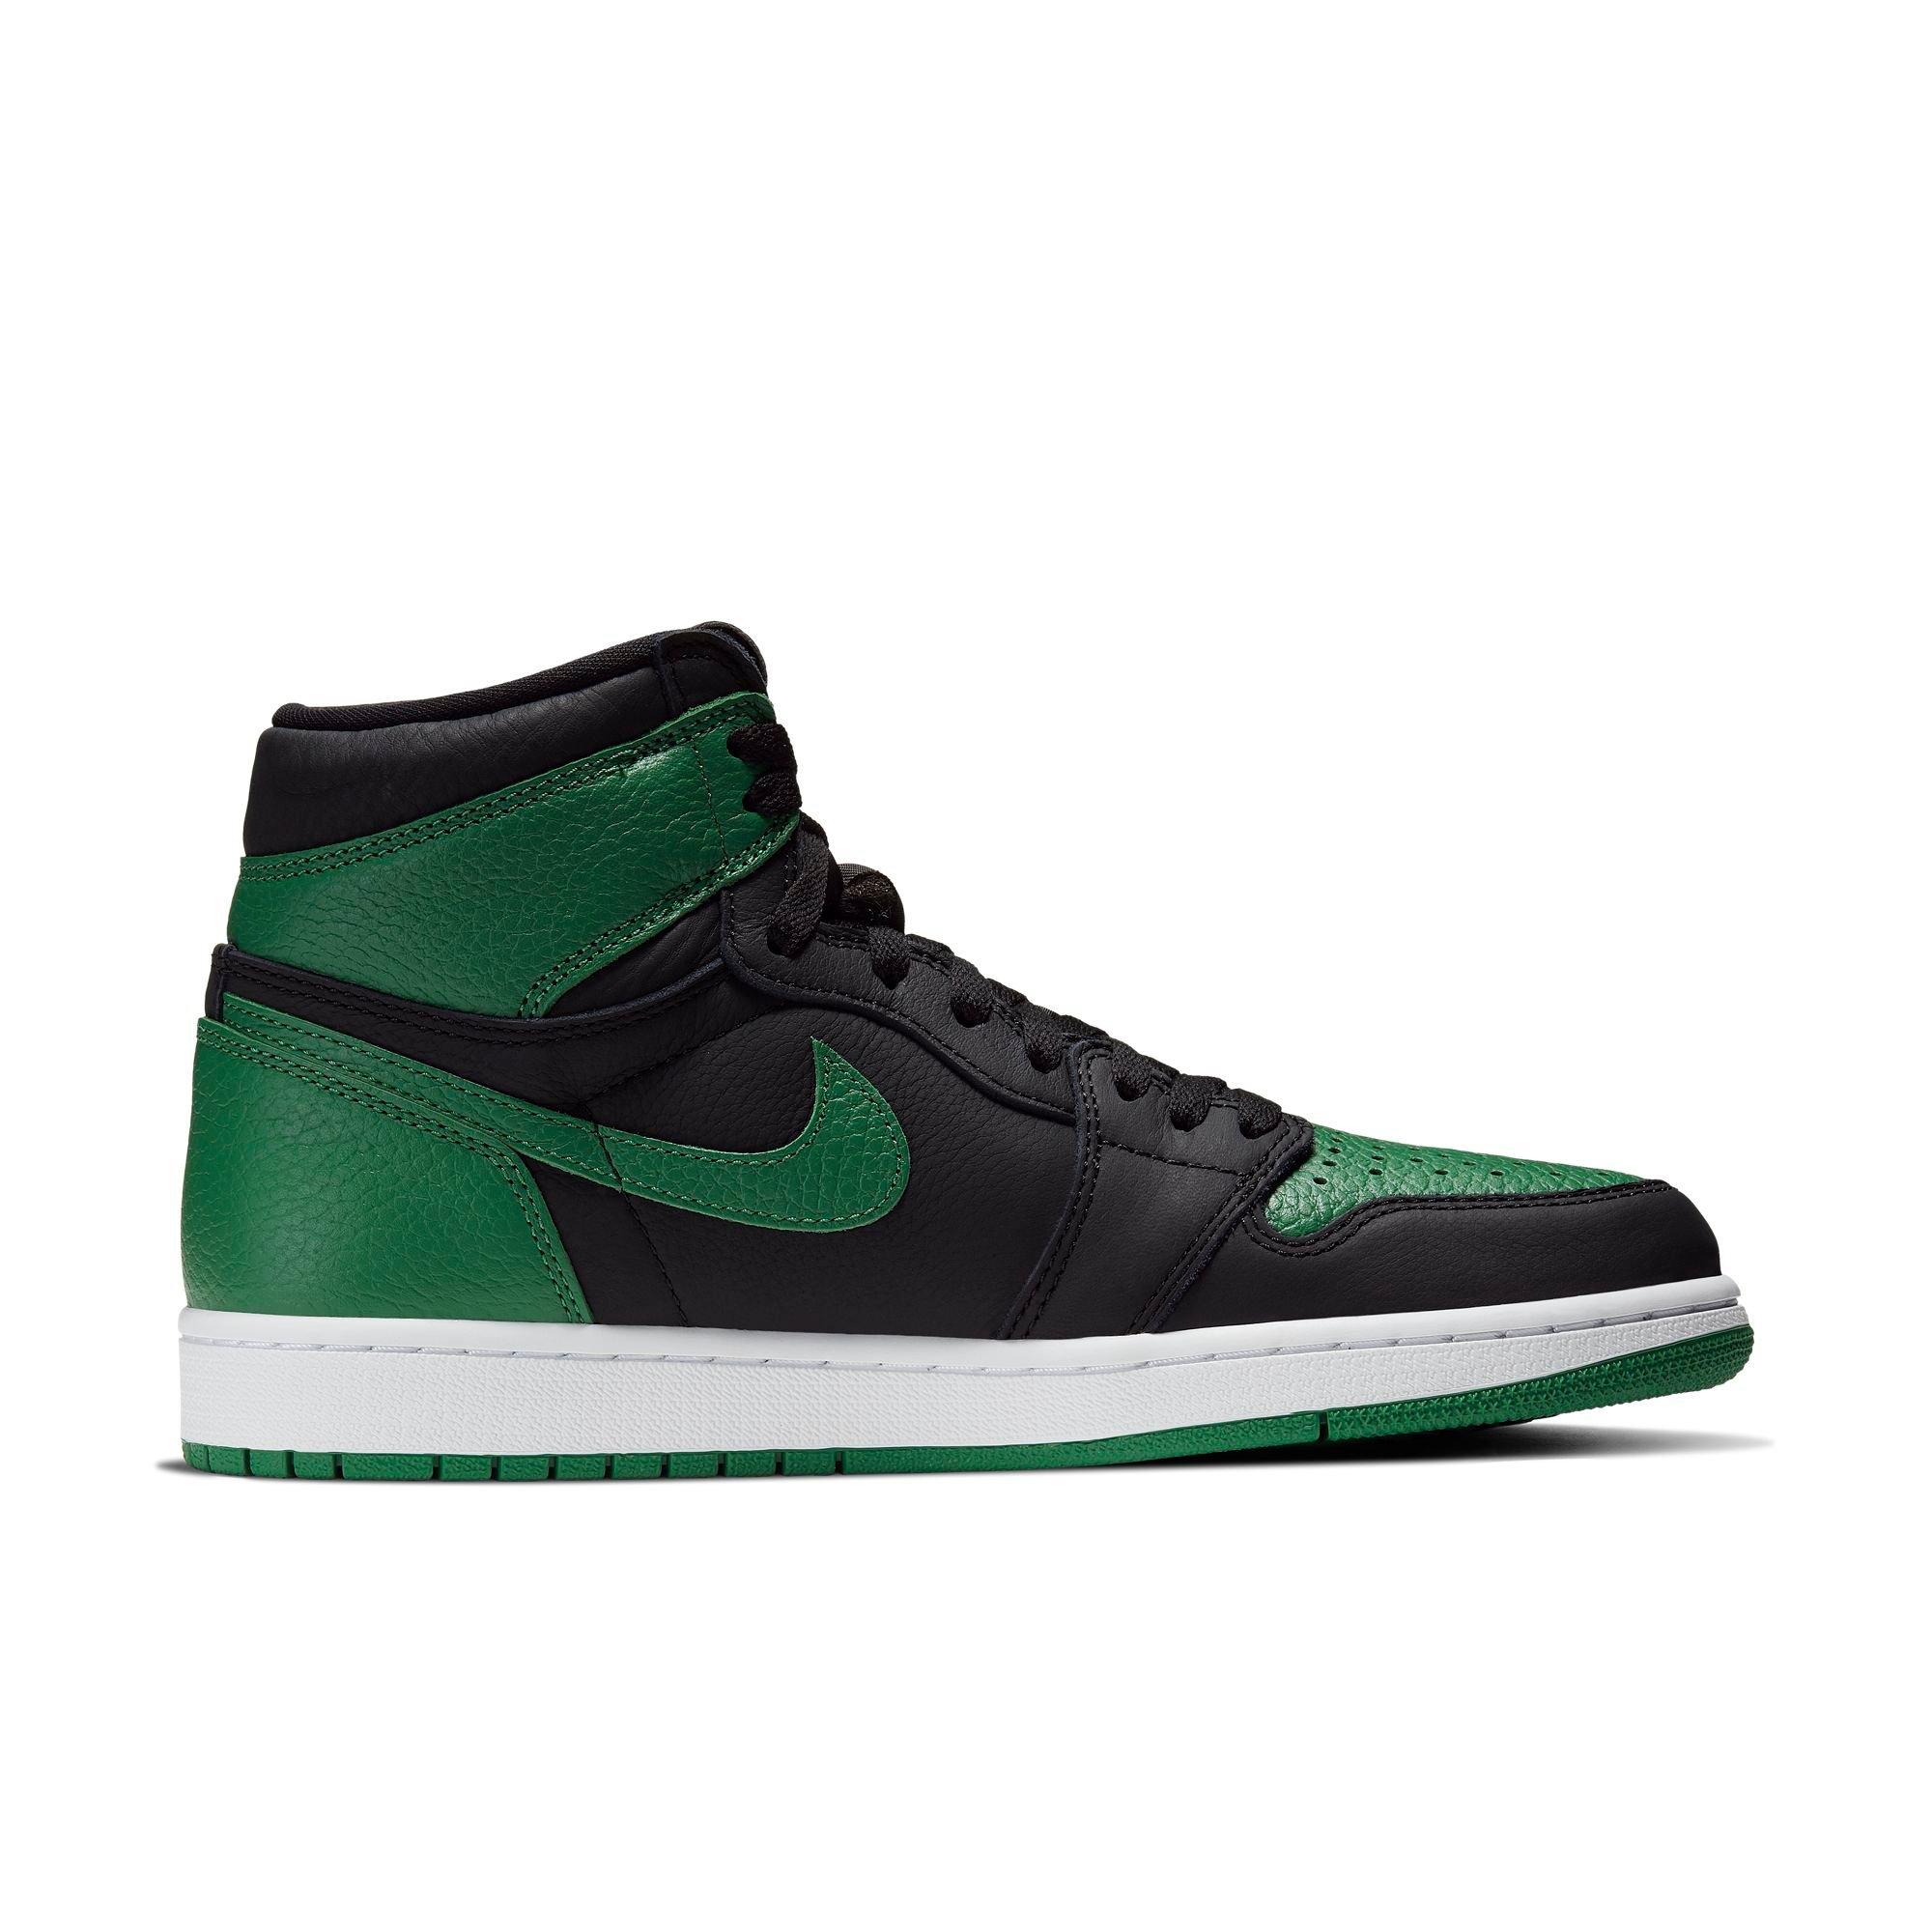 Sneakers Release – Jordan 1 Retro High 